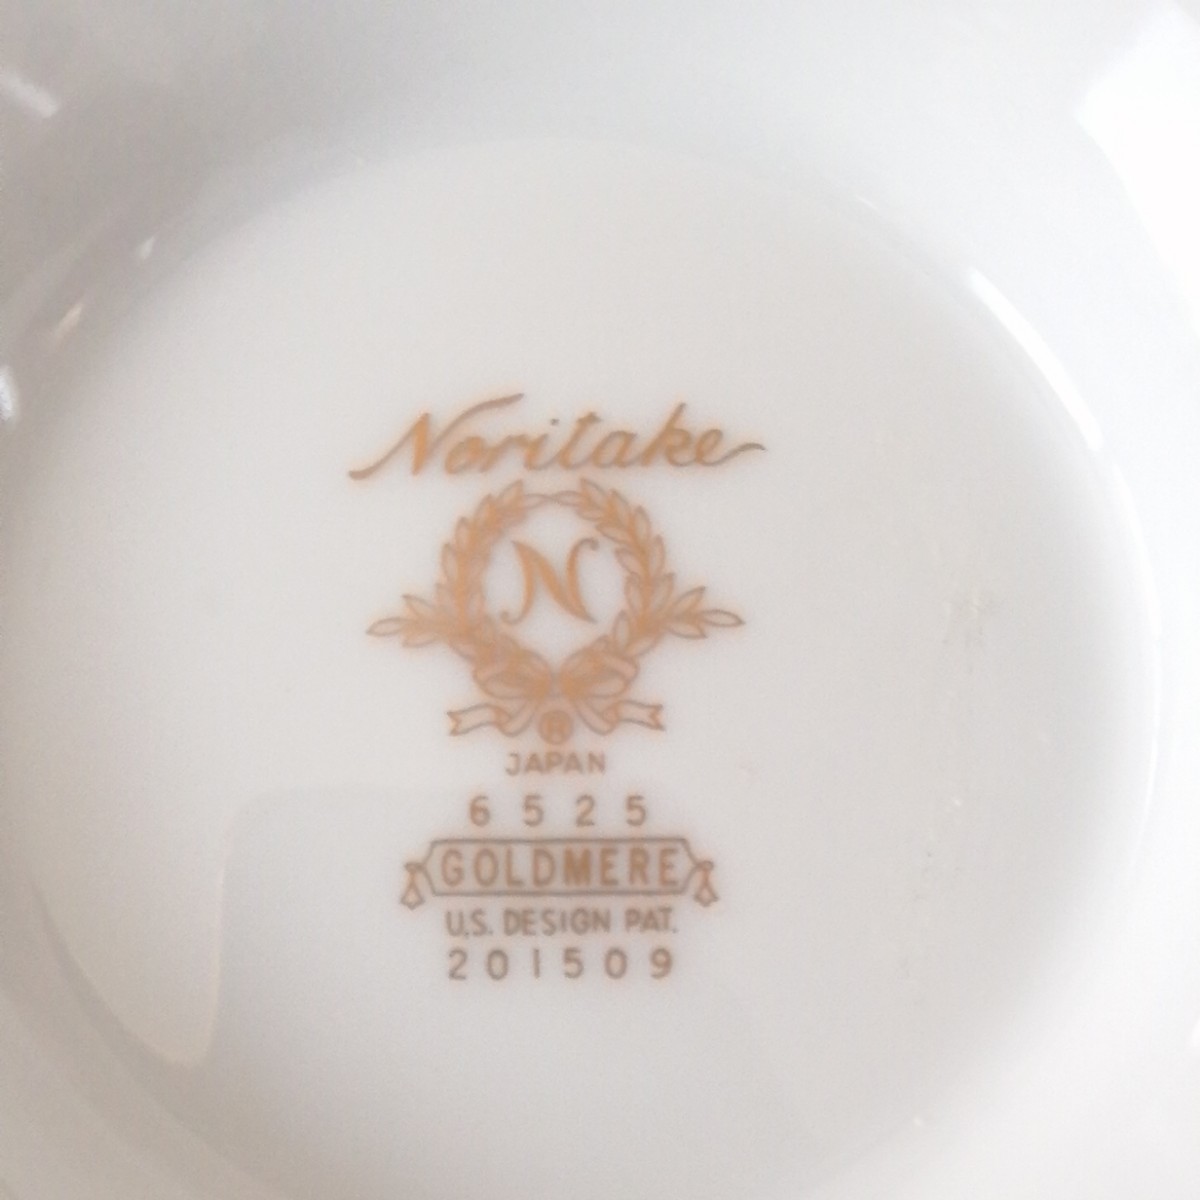 ノリタケ ティーポット ゴールドミア 6525 約26㎝×16㎝×15㎝ 廃盤品 洋食器  Noritake 未使用保管品